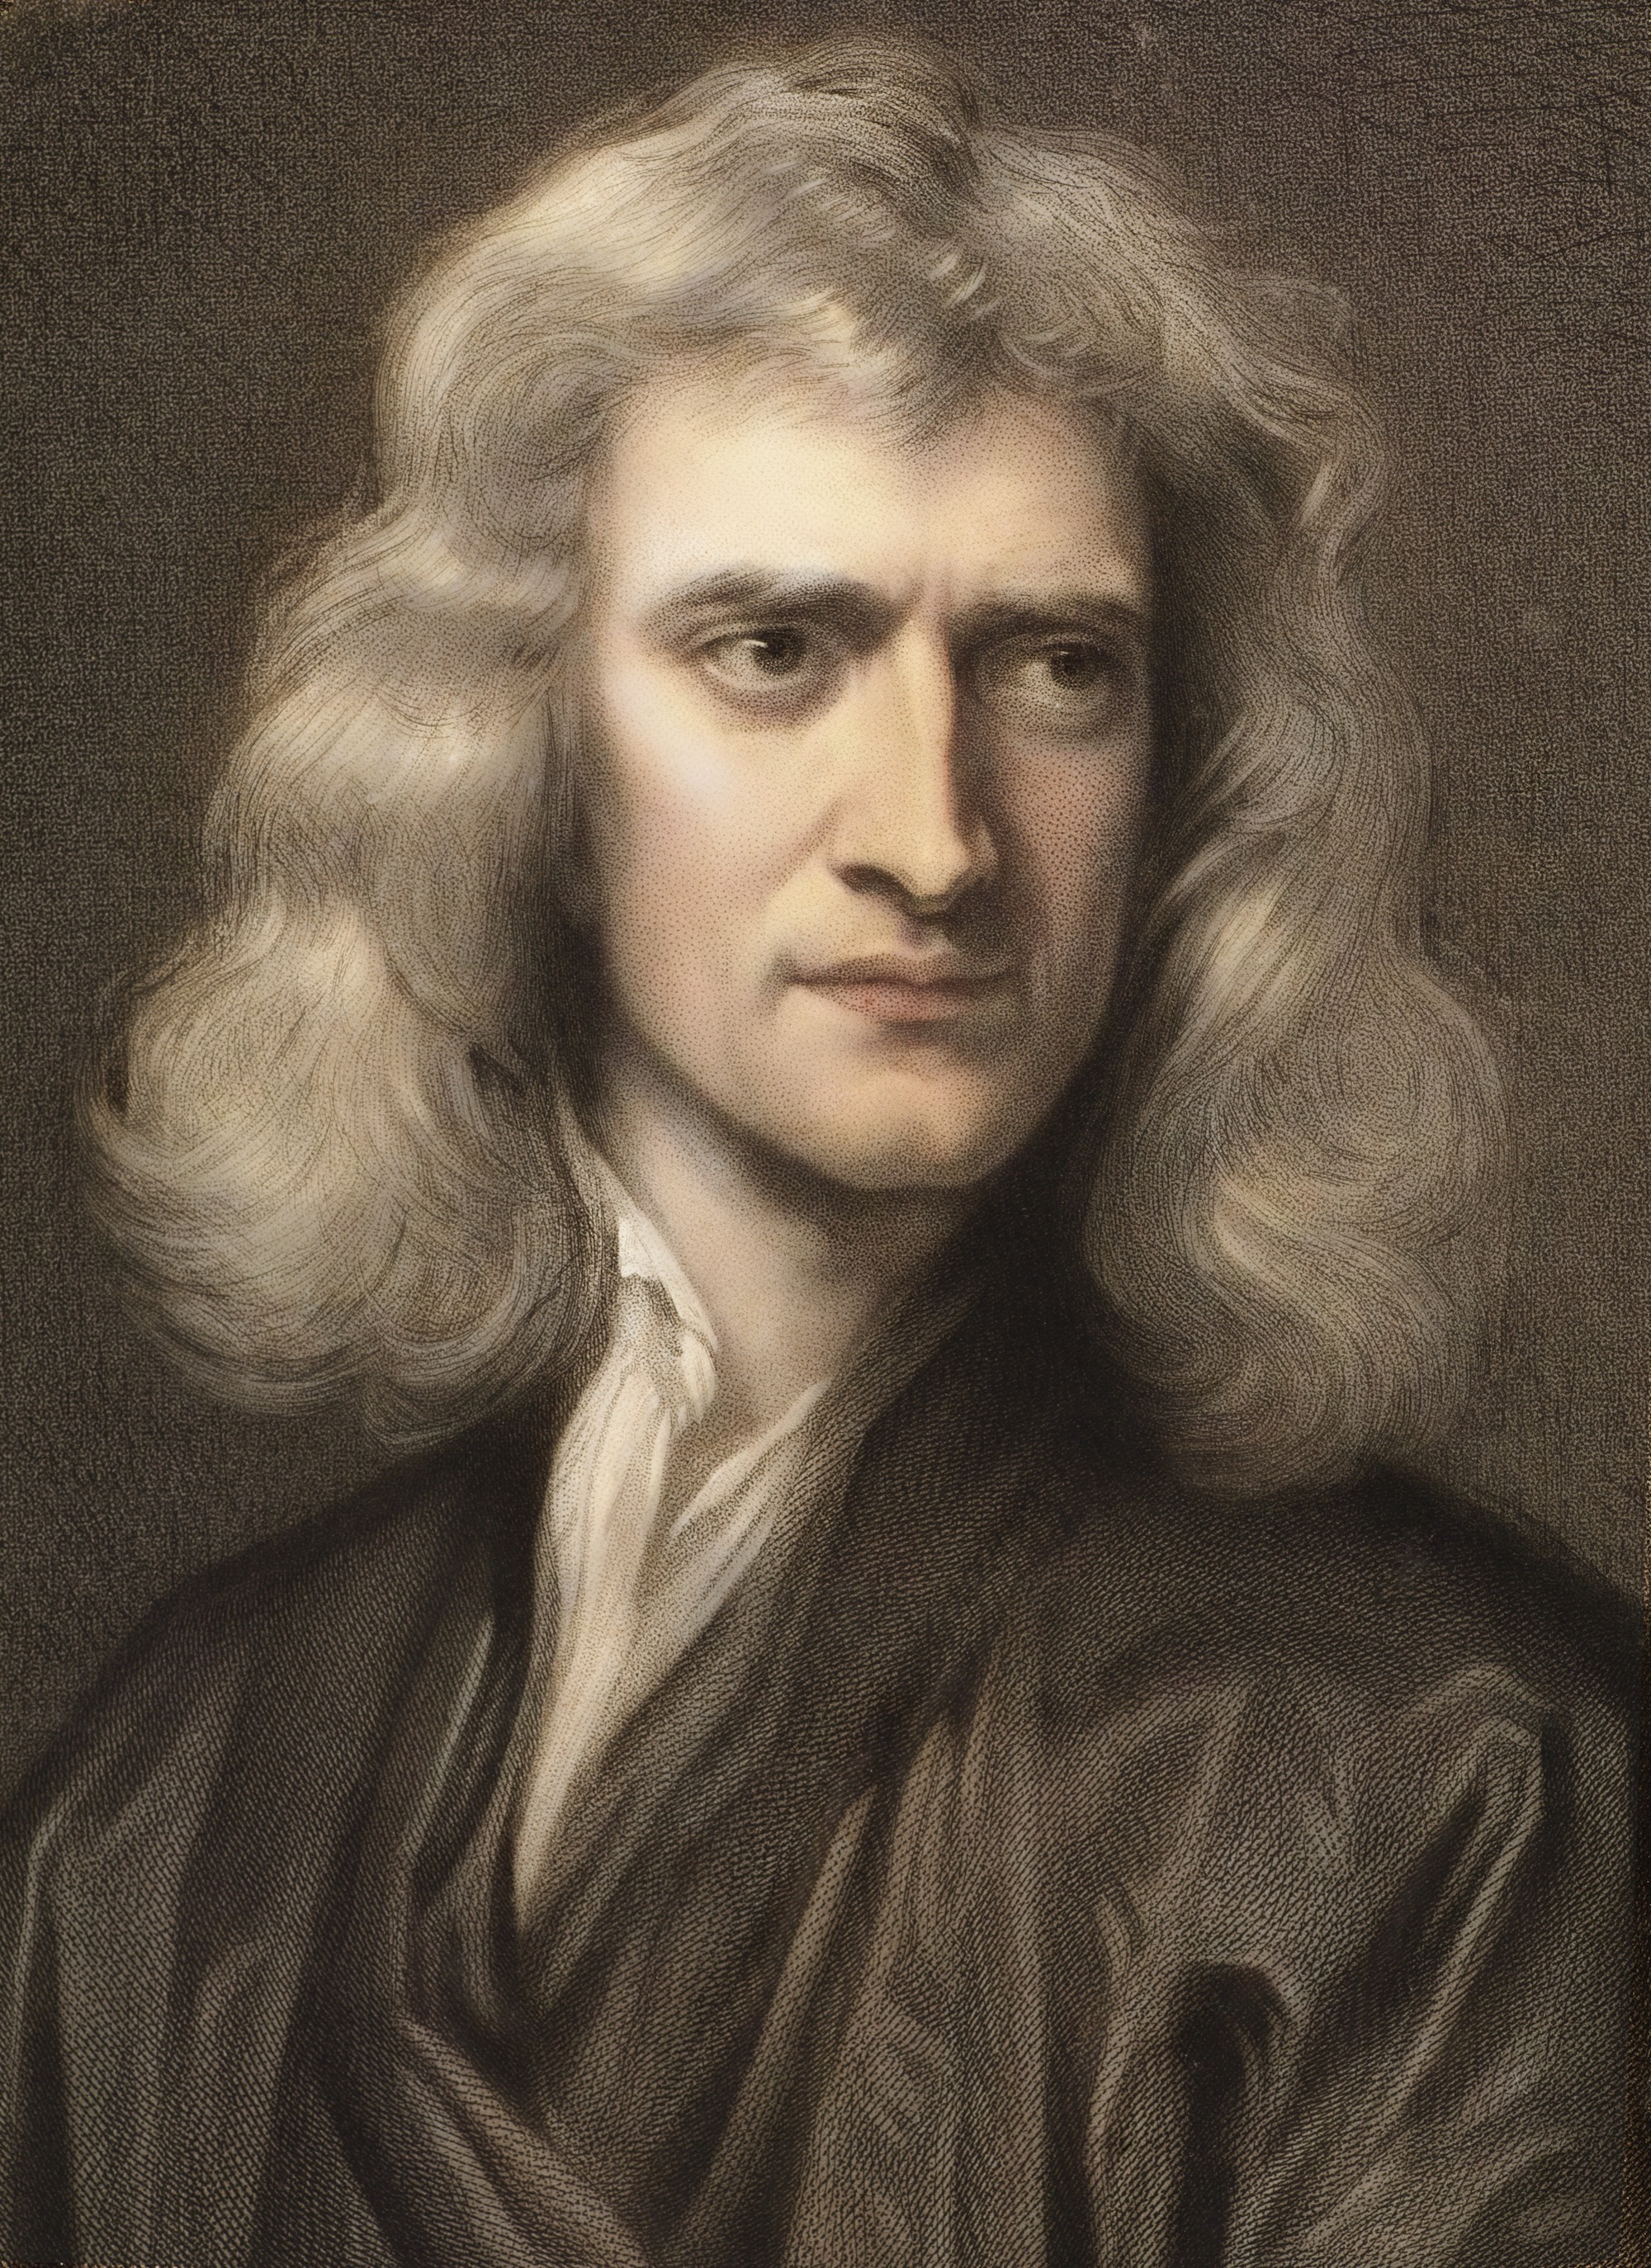 Isaac Newton being still alive